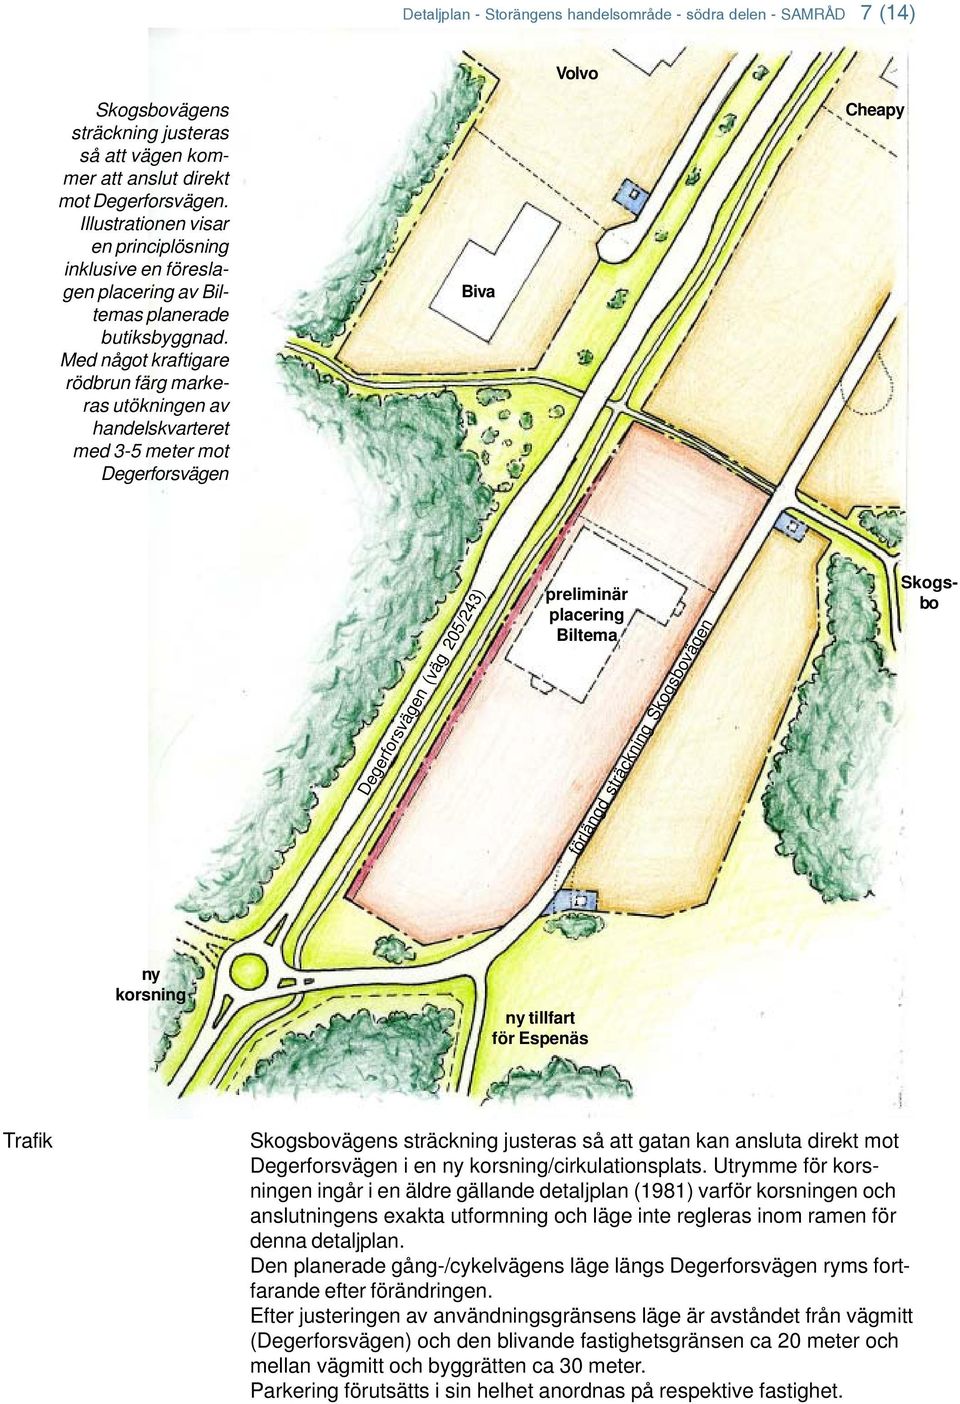 Med något kraftigare rödbrun färg markeras utökningen av handelskvarteret med 3-5 meter mot Degerforsvägen Biva Cheapy Degerforsvägen (väg 205/243) preliminär placering Biltema förlängd sträckning